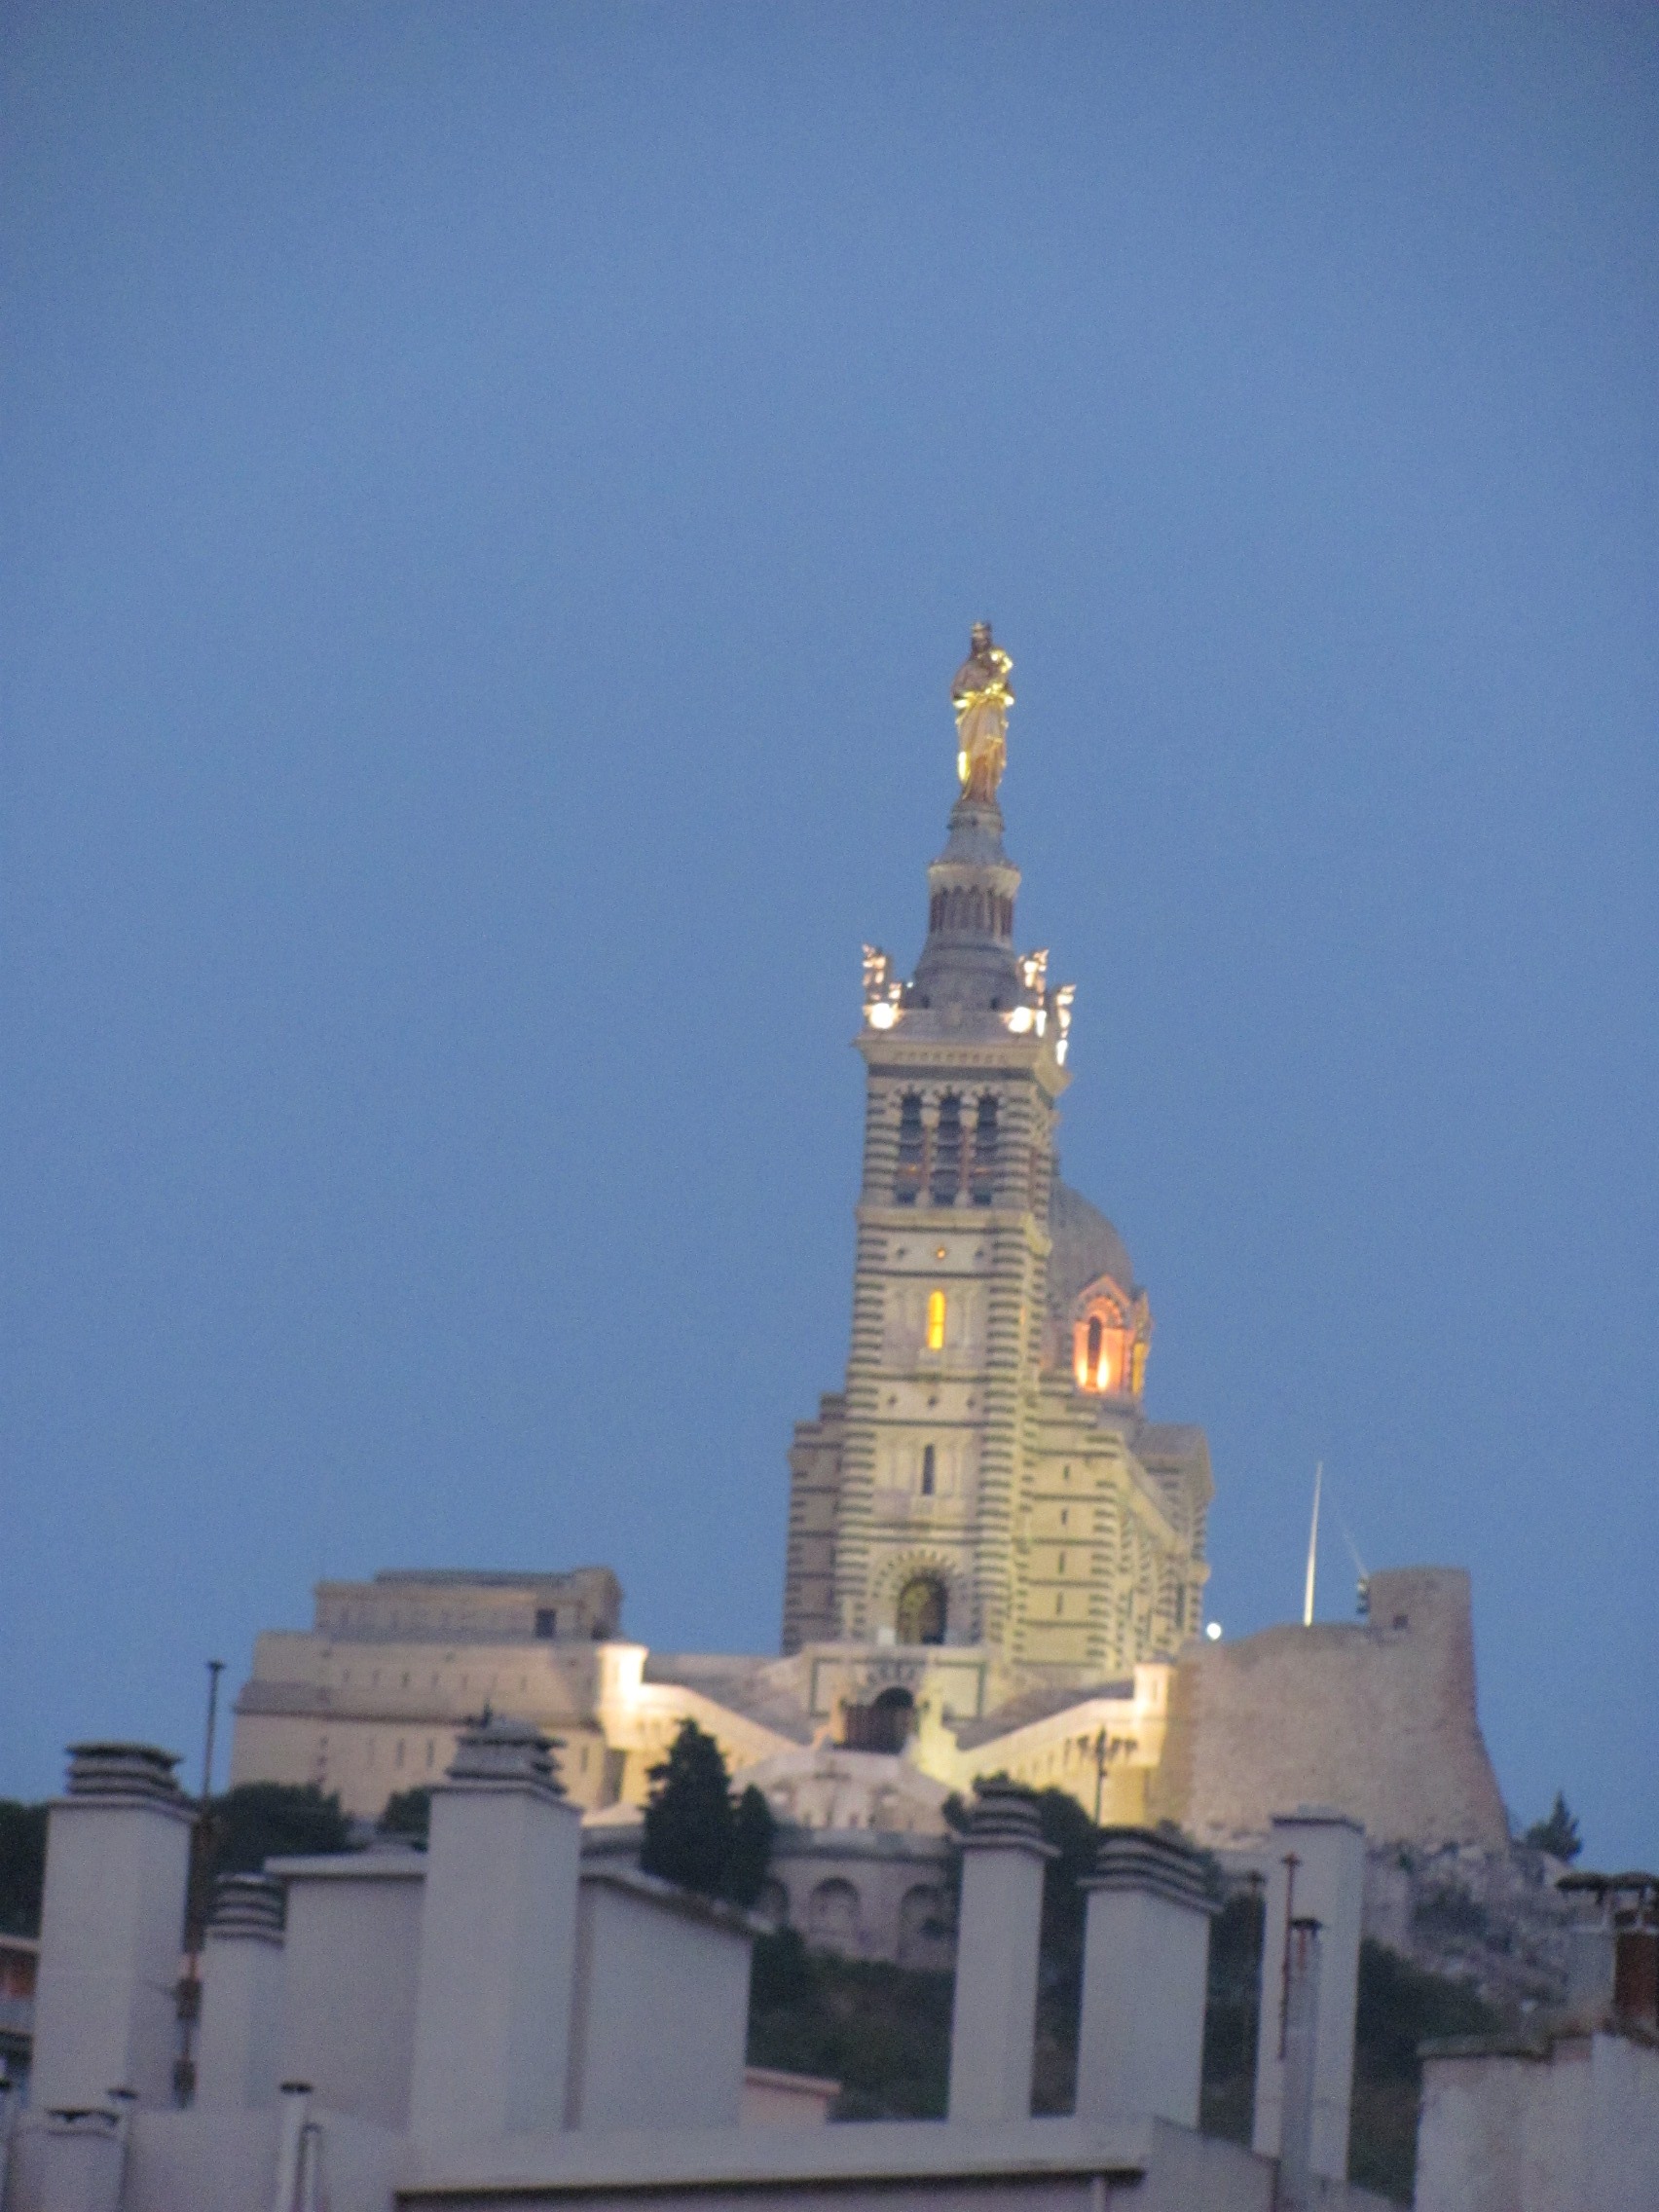 14 juillet 2013 : Le feu d’artifice embrase le ciel de Marseille !